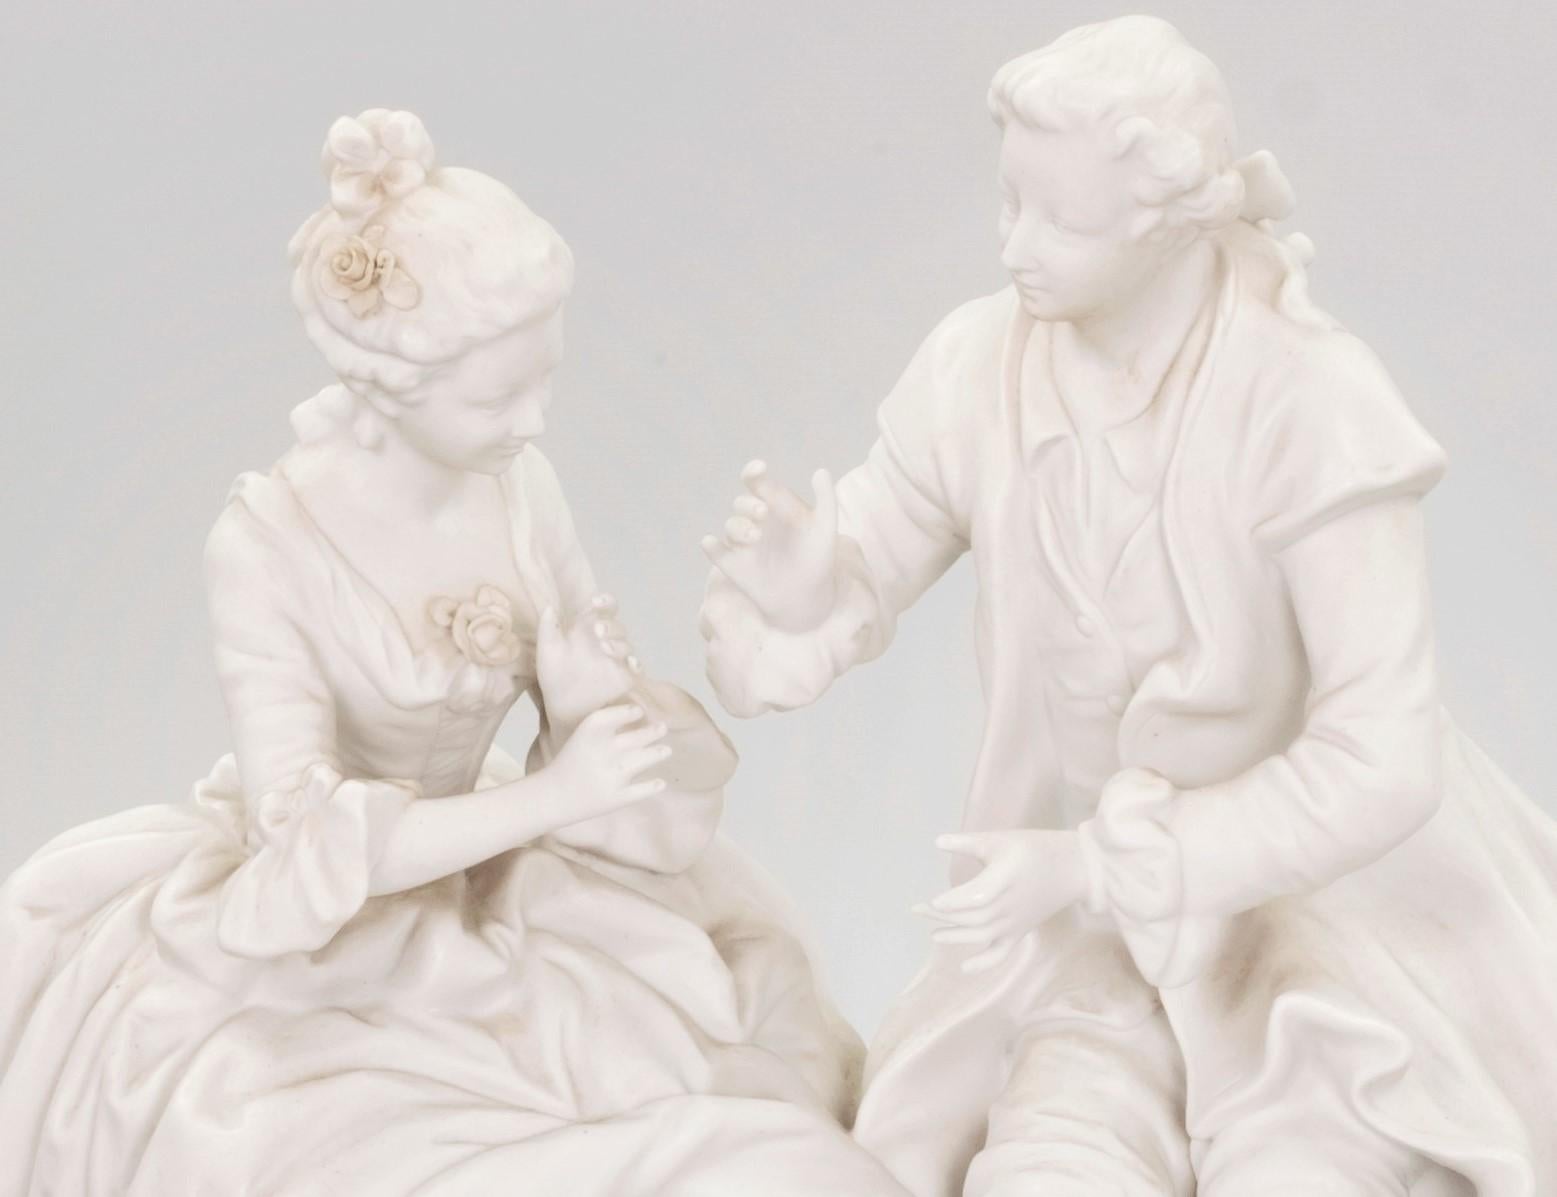 Französische Biskuit-Porzellanfigur aus dem 19. Jahrhundert, die ein sitzendes und sich unterhaltendes Paar darstellt. Die Figur ist auf der Rückseite mit der Seriennummer 